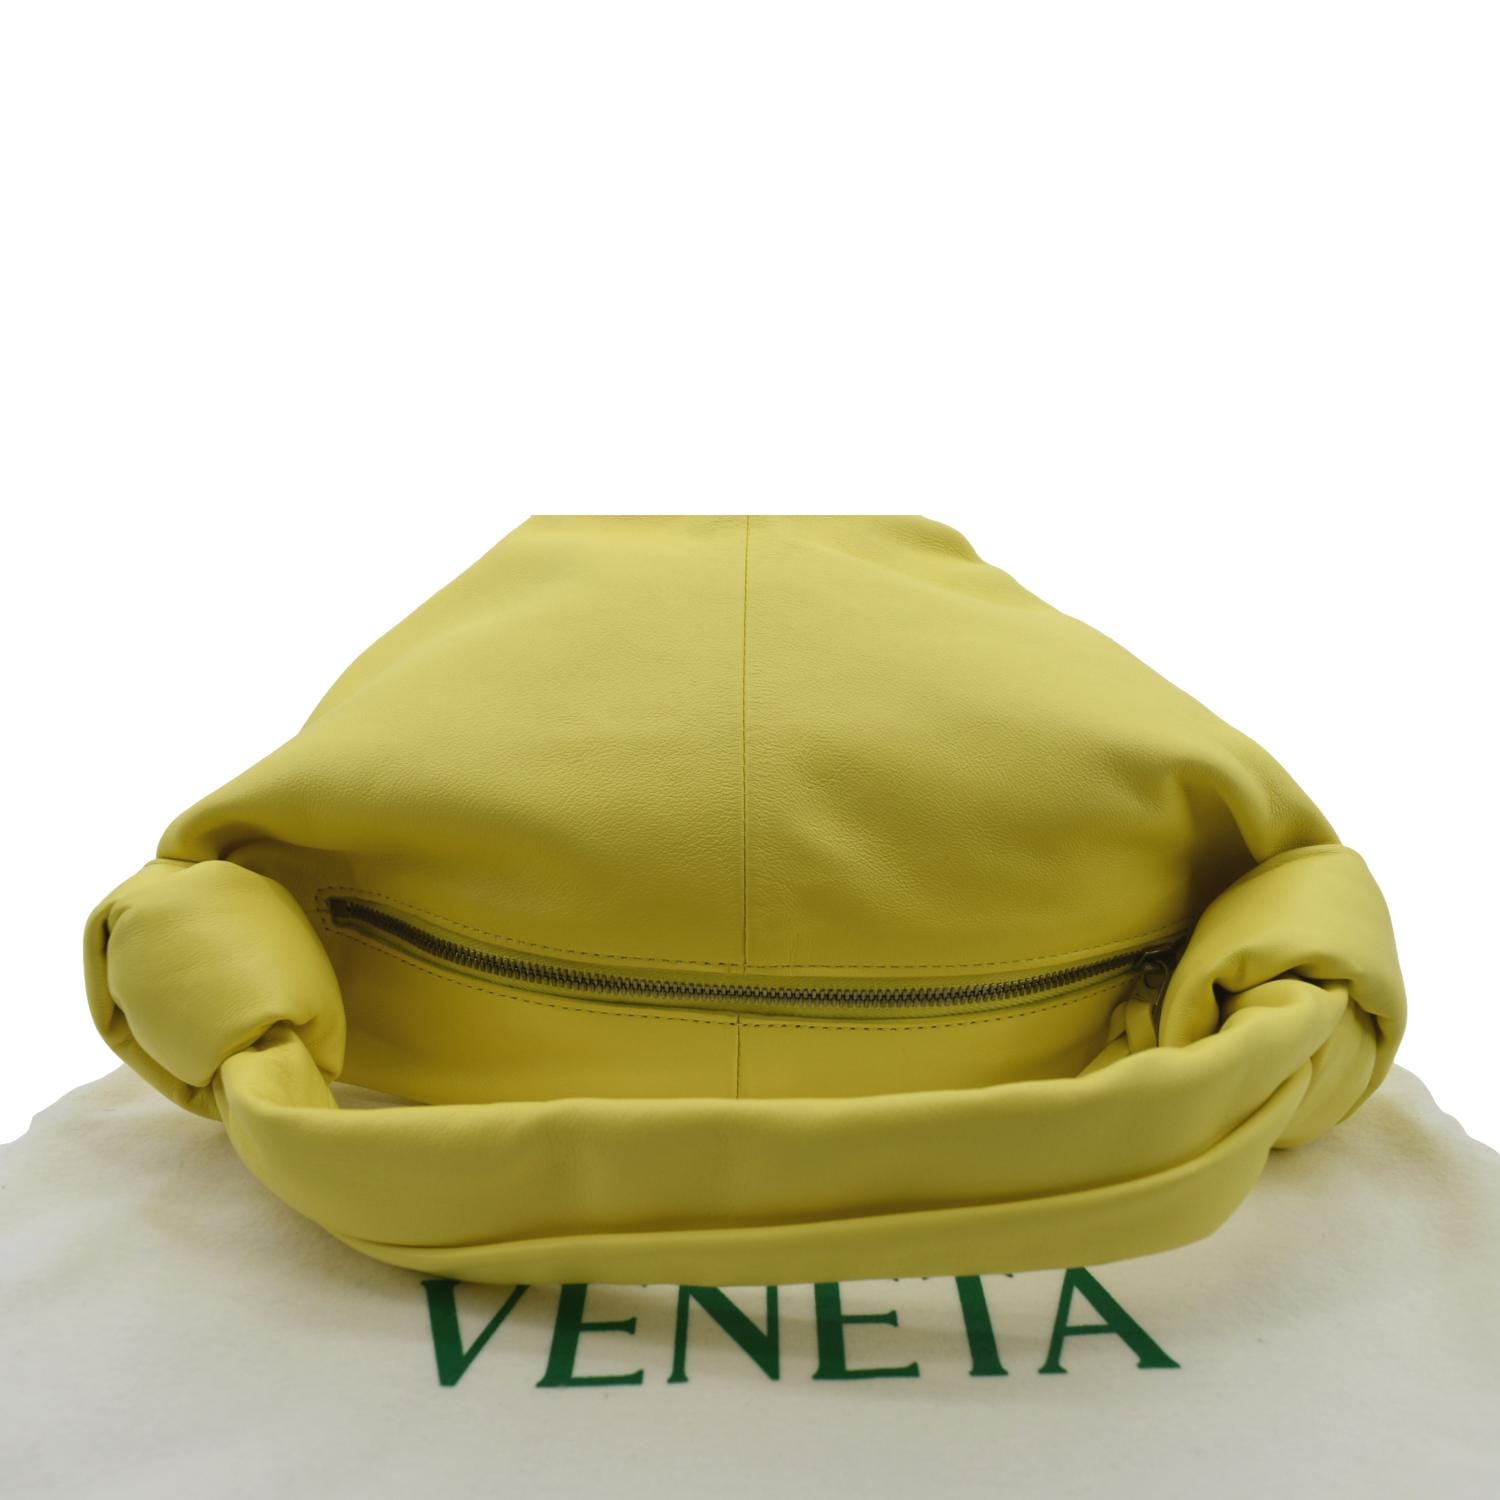 BOTTEGA VENETA Calfskin Mini Double Knot Bag Yellow 1224534